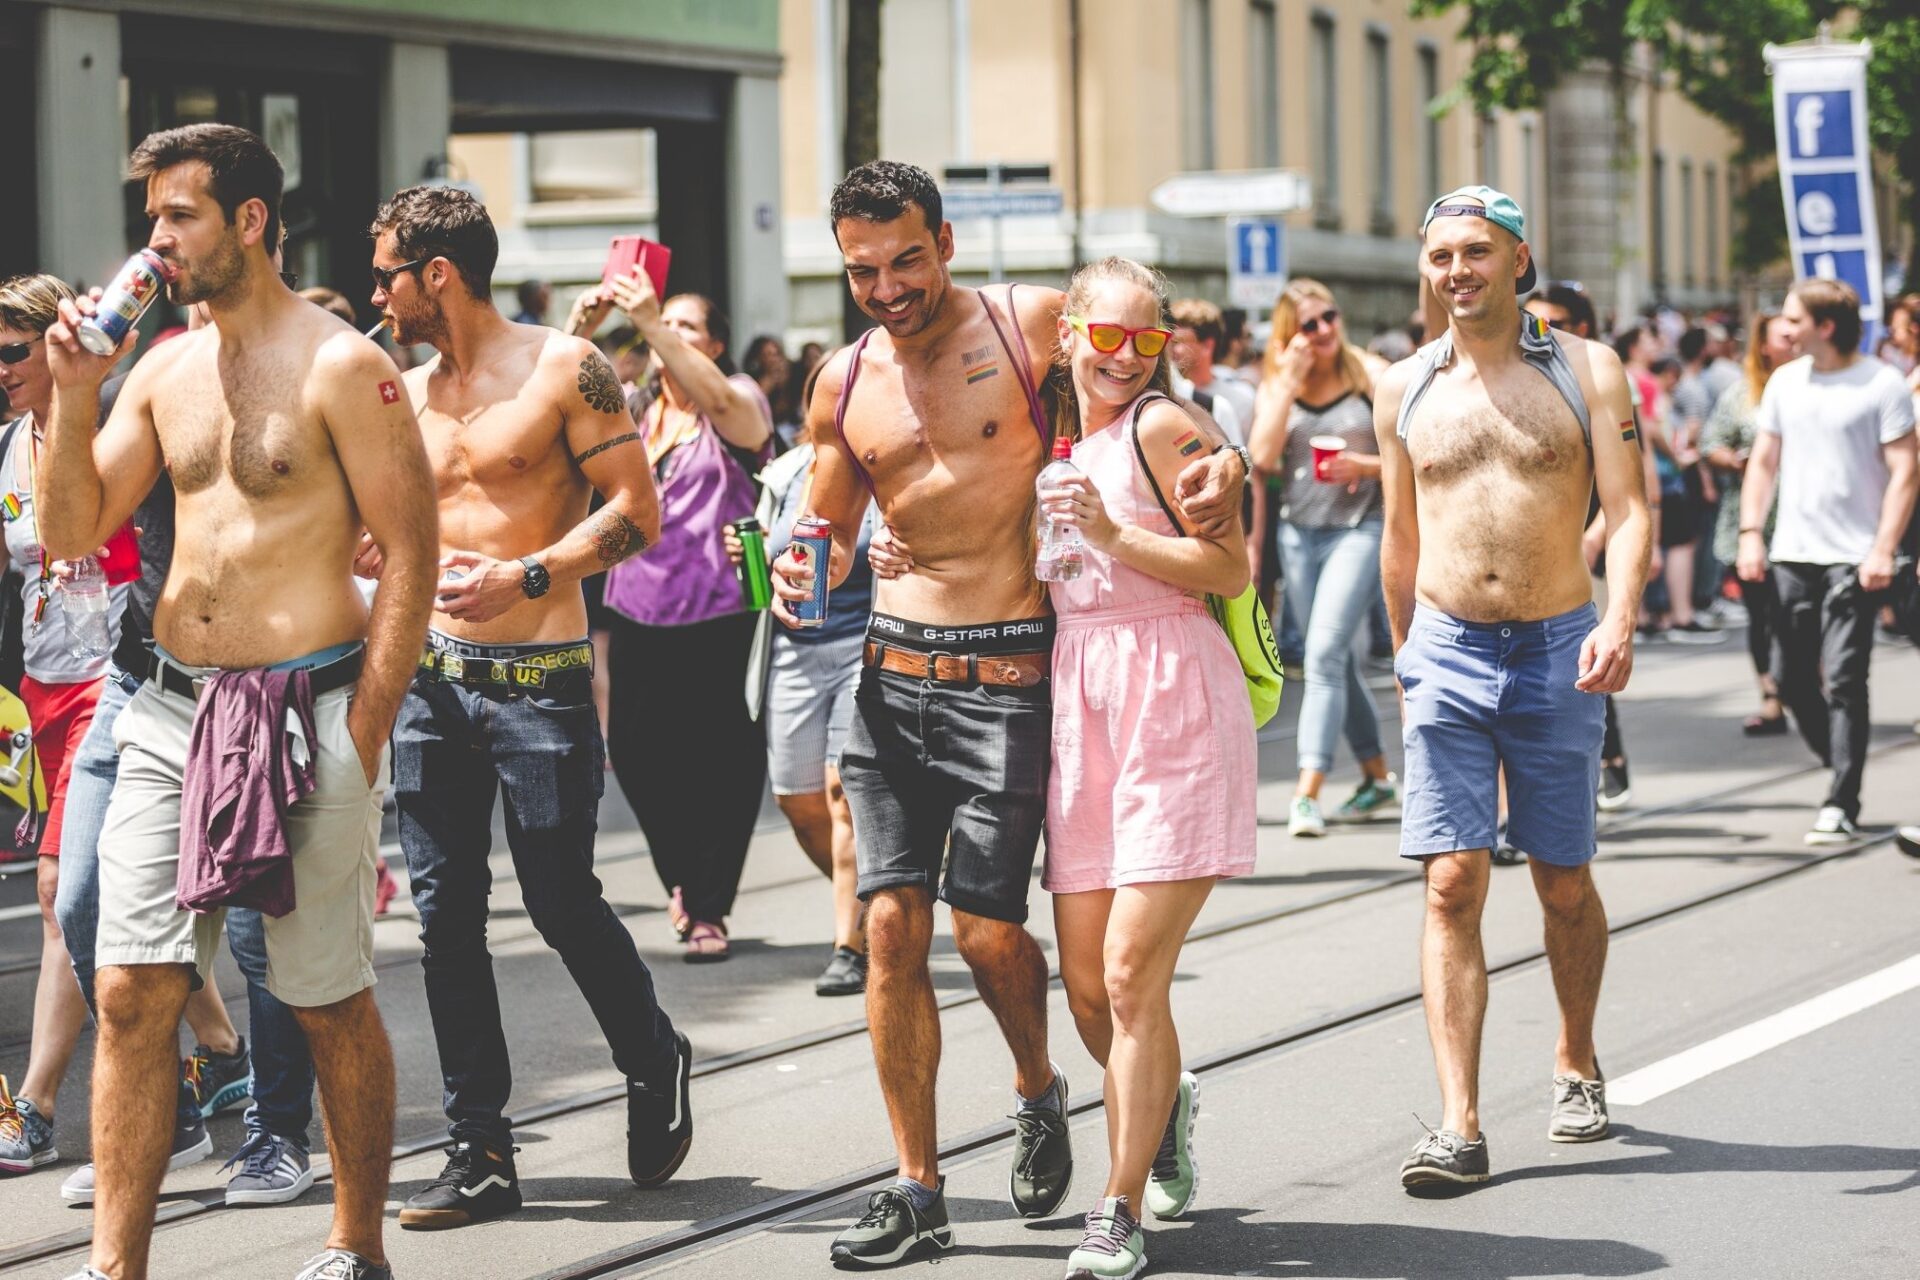 La Gay Pride 2022 a fait son retour à Zurich dans une chaleur de plomb